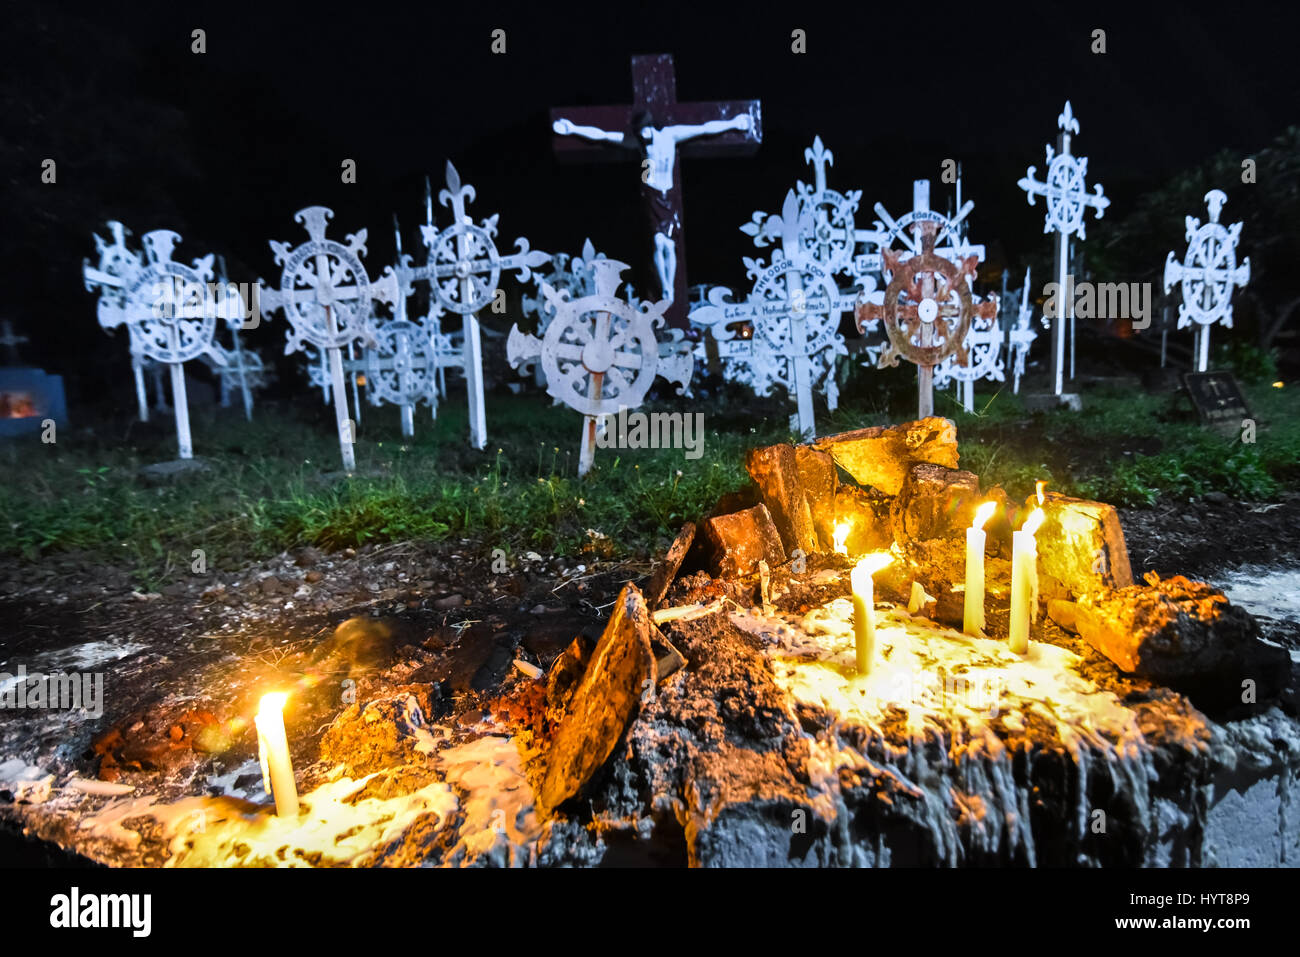 Candlelights presso la vecchia Cattedrale cattolica romana cimitero di Larantuka con la statua della crocifissione di Gesù in background. Foto Stock